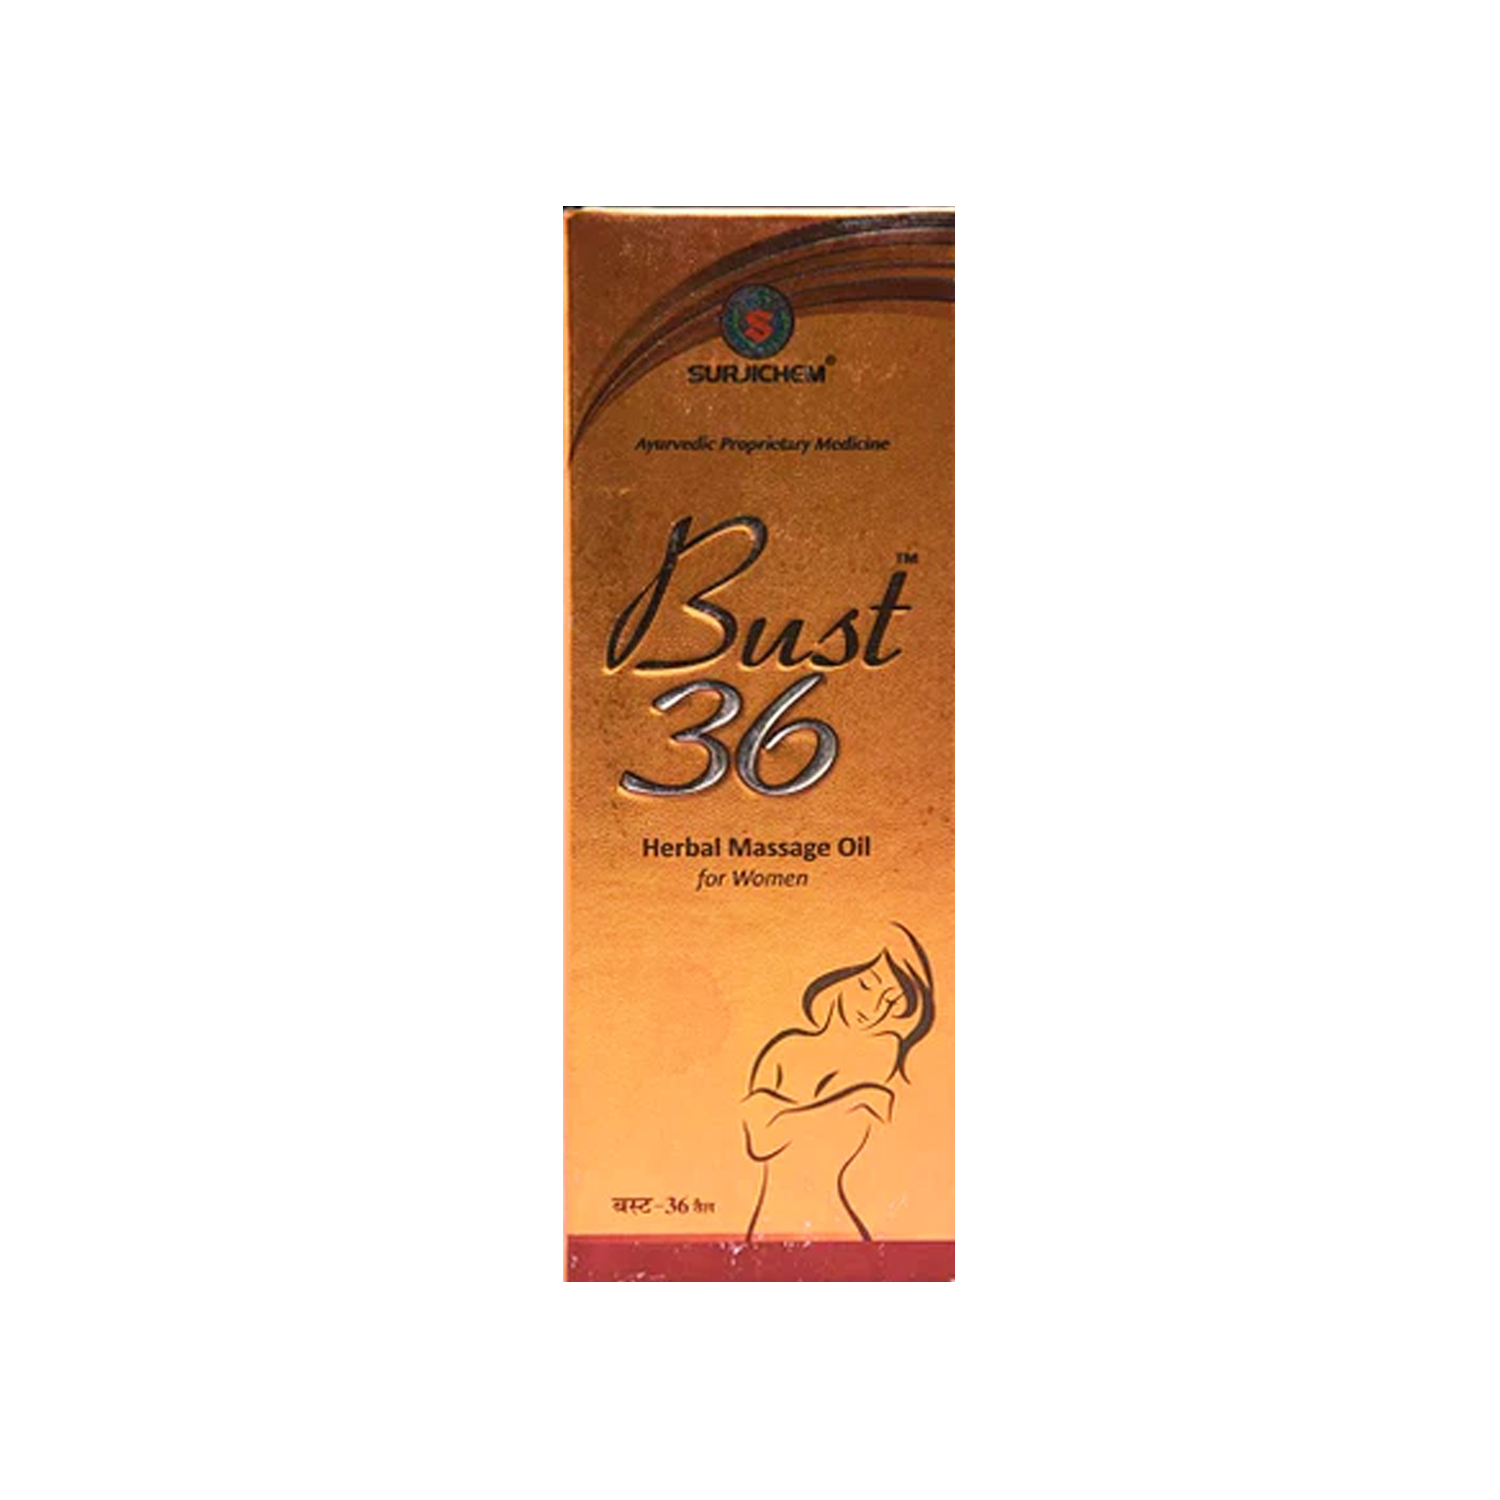 Bust 36 gel for Women 100ml @ ₹190